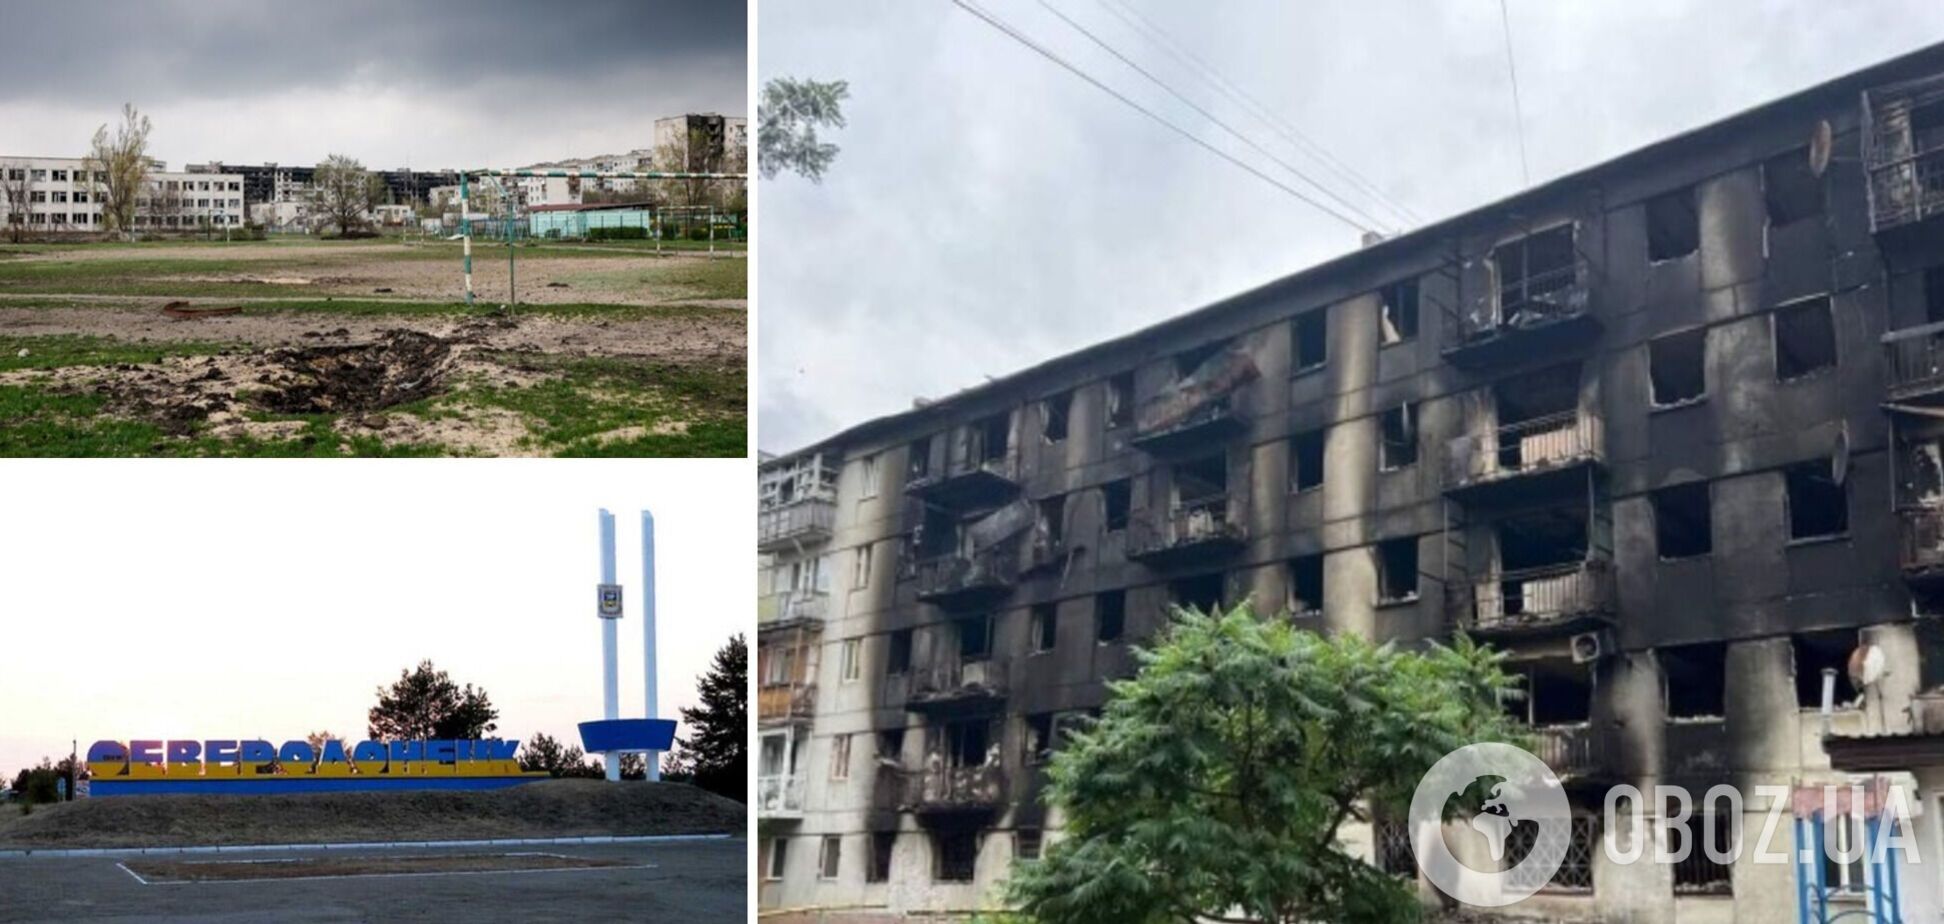 В Северодонецке оккупанты 'охотятся' на патриотов Украины, инфраструктура города разрушена